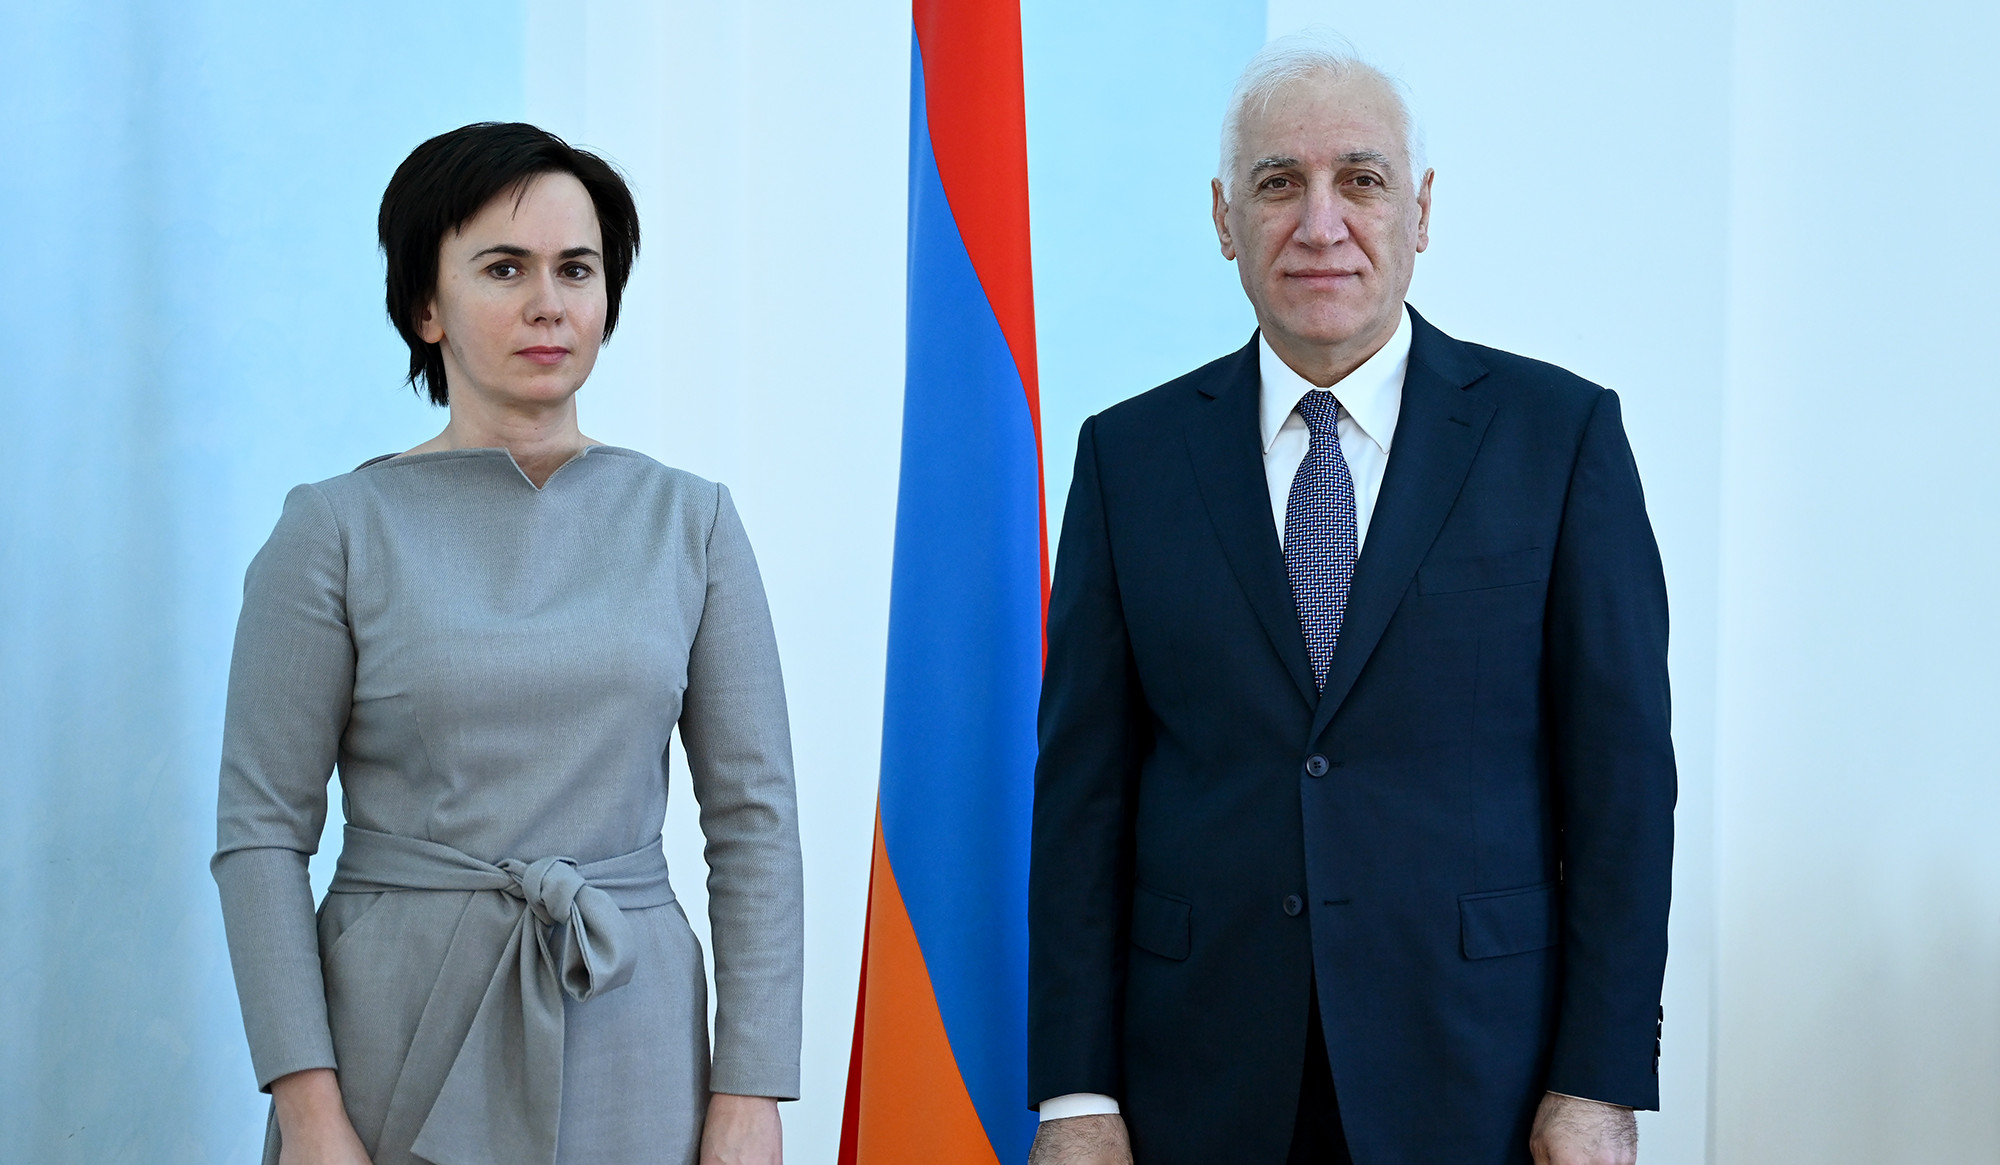 Համատեղ ջանքերով նպաստել հայ-լիտվական օրակարգի ընդլայնմանն ու հետագա խորացմանը. ՀՀ նախագահն ընդունել է Լիտվայի դեսպանին